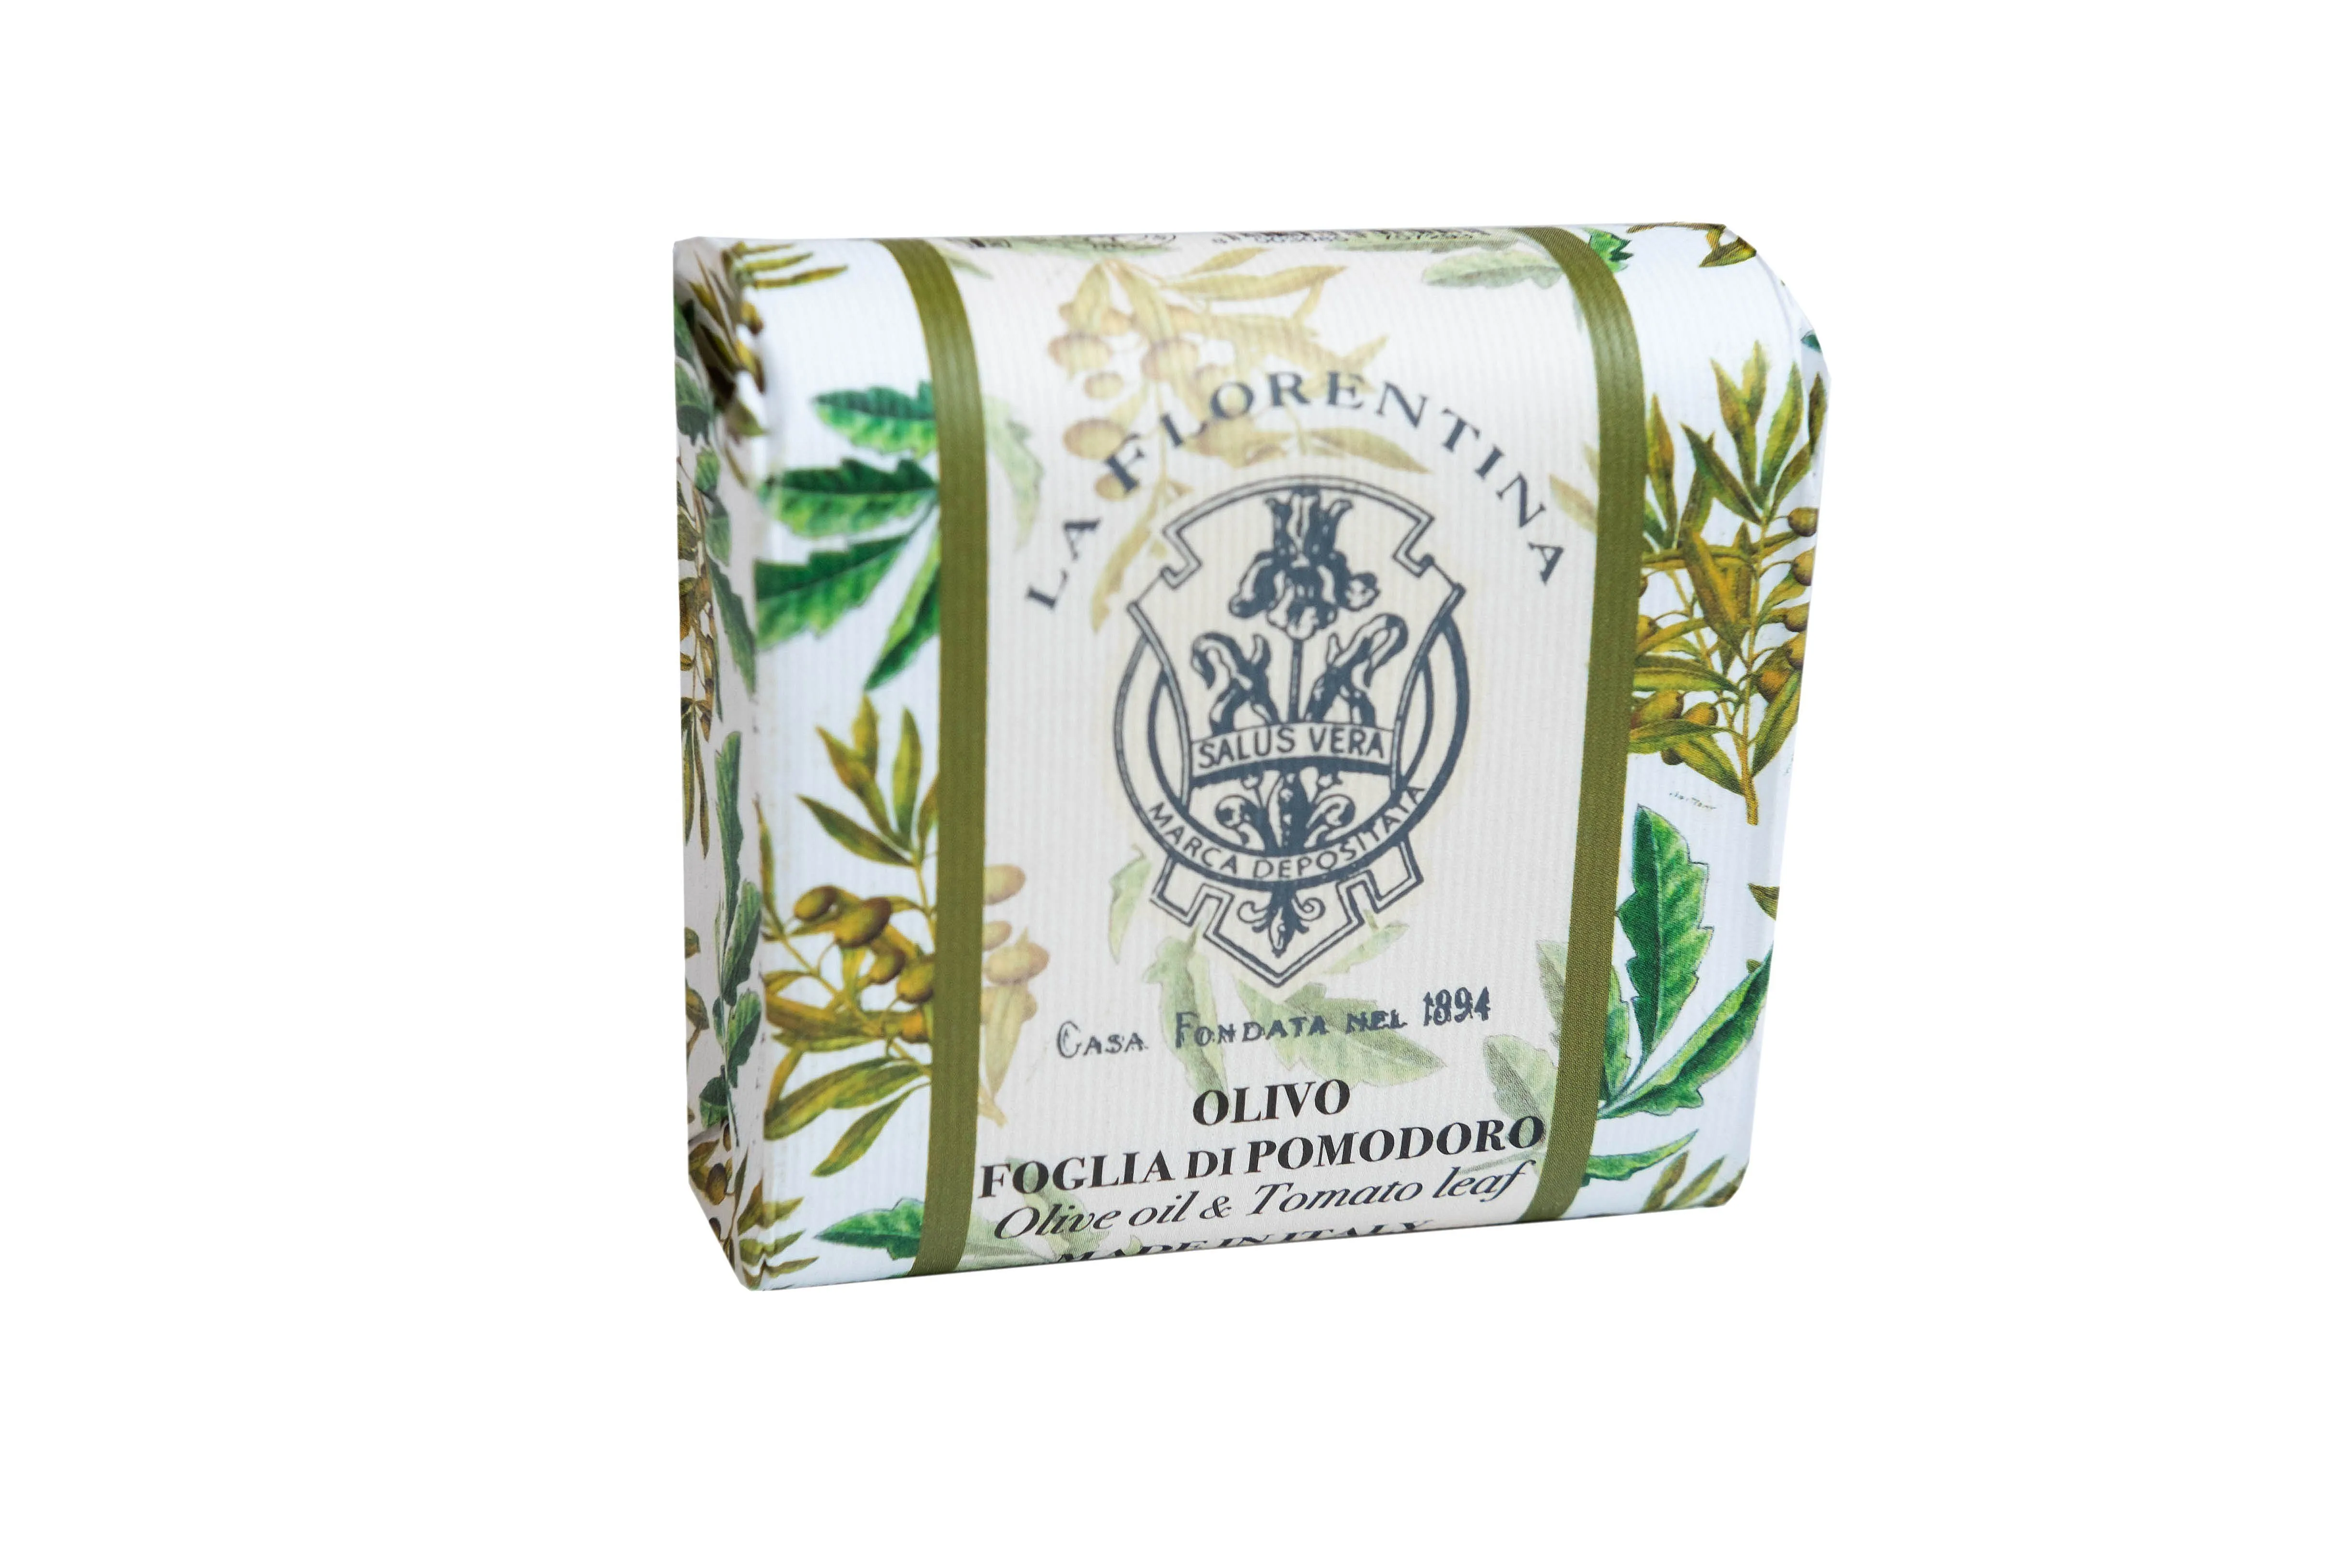 La Florentina Bar Soap Olive Oil & Tomato leaf Мыло натуральное на основе масел ши и оливы с экстрактами Оливкового масла и Листьев томата 106 гр